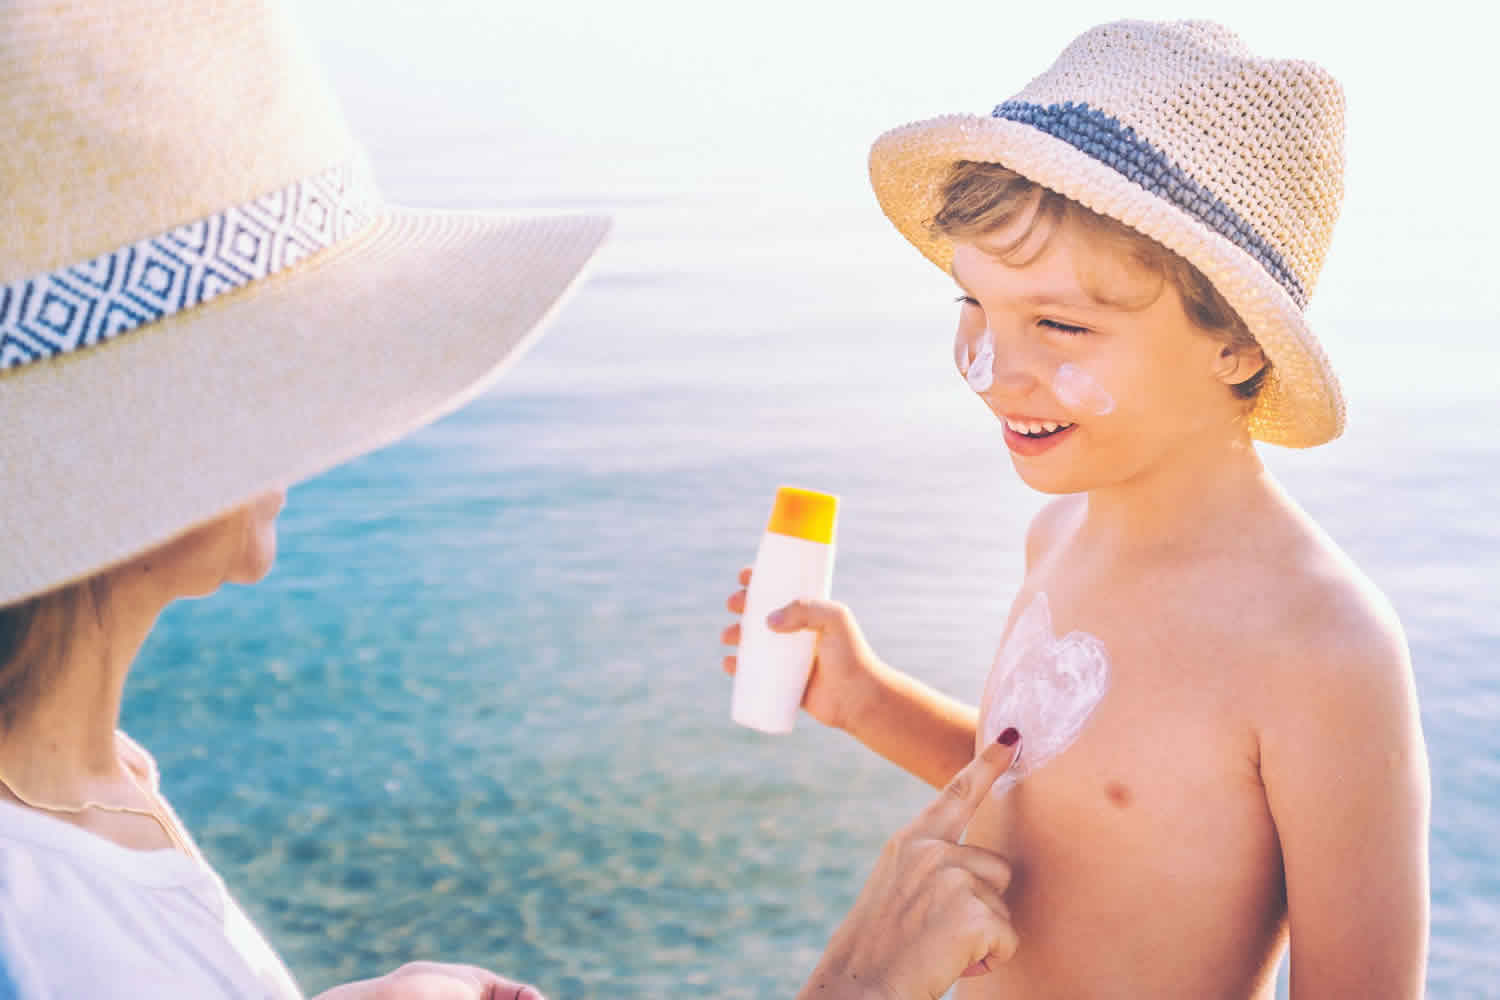 Skin cancer in children